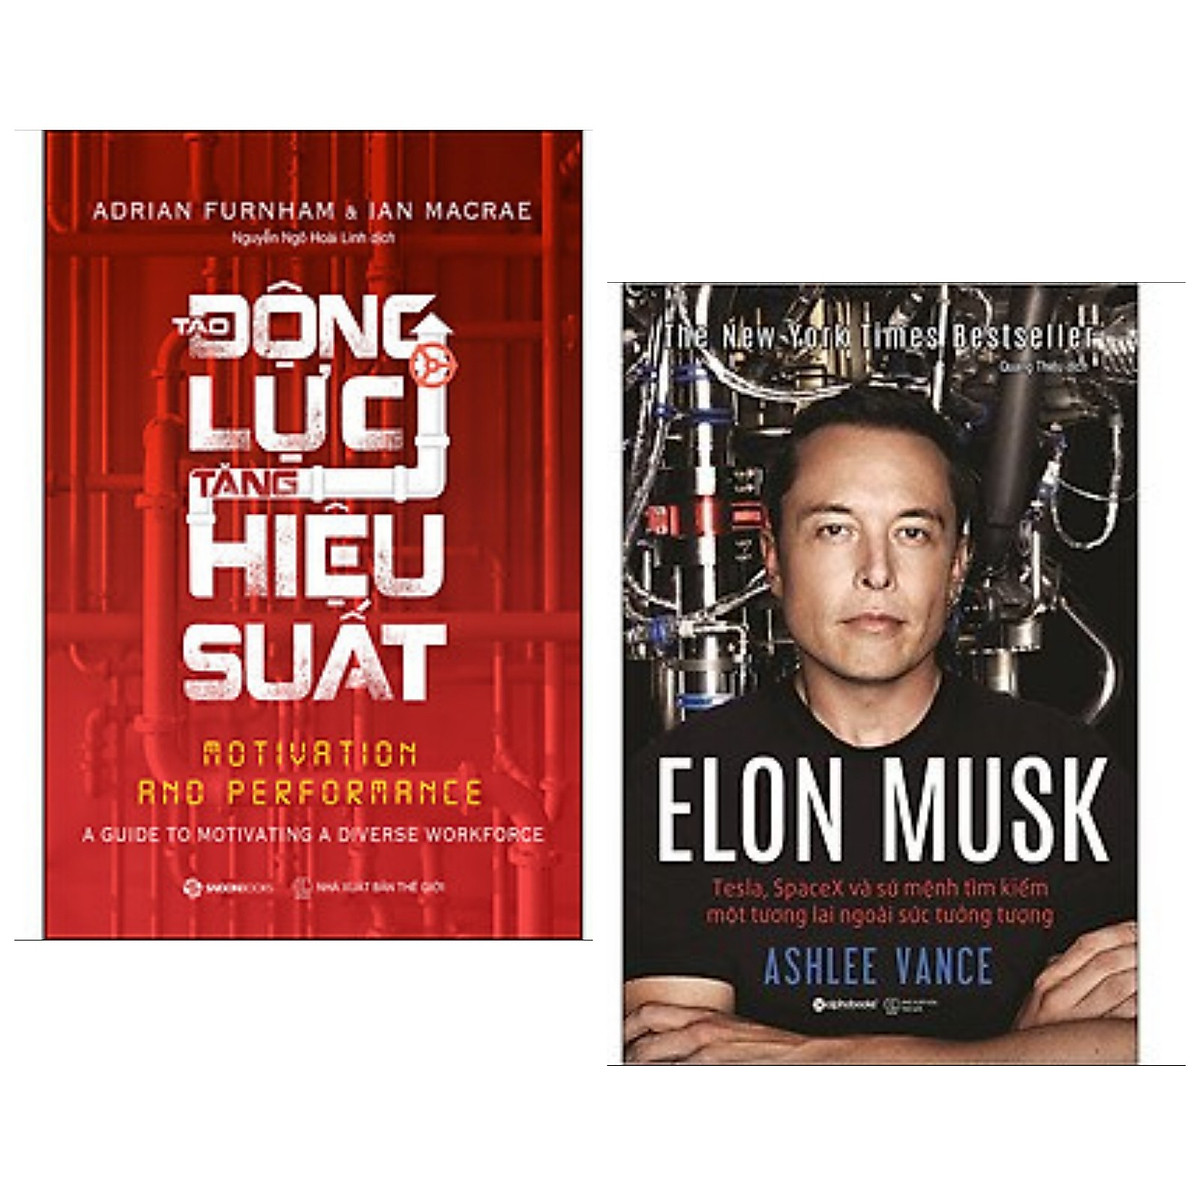 Combo 2 cuốn: Tạo Động Lực - Tăng Hiệu Suất + Elon Musk: Tesla, Spacex Và Sứ Mệnh Tìm Kiếm Một Tương Lai Ngoài Sức Tưởng Tượng / Bộ sách vừa truyền cảm hứng vừa mang lại lợi nhuận